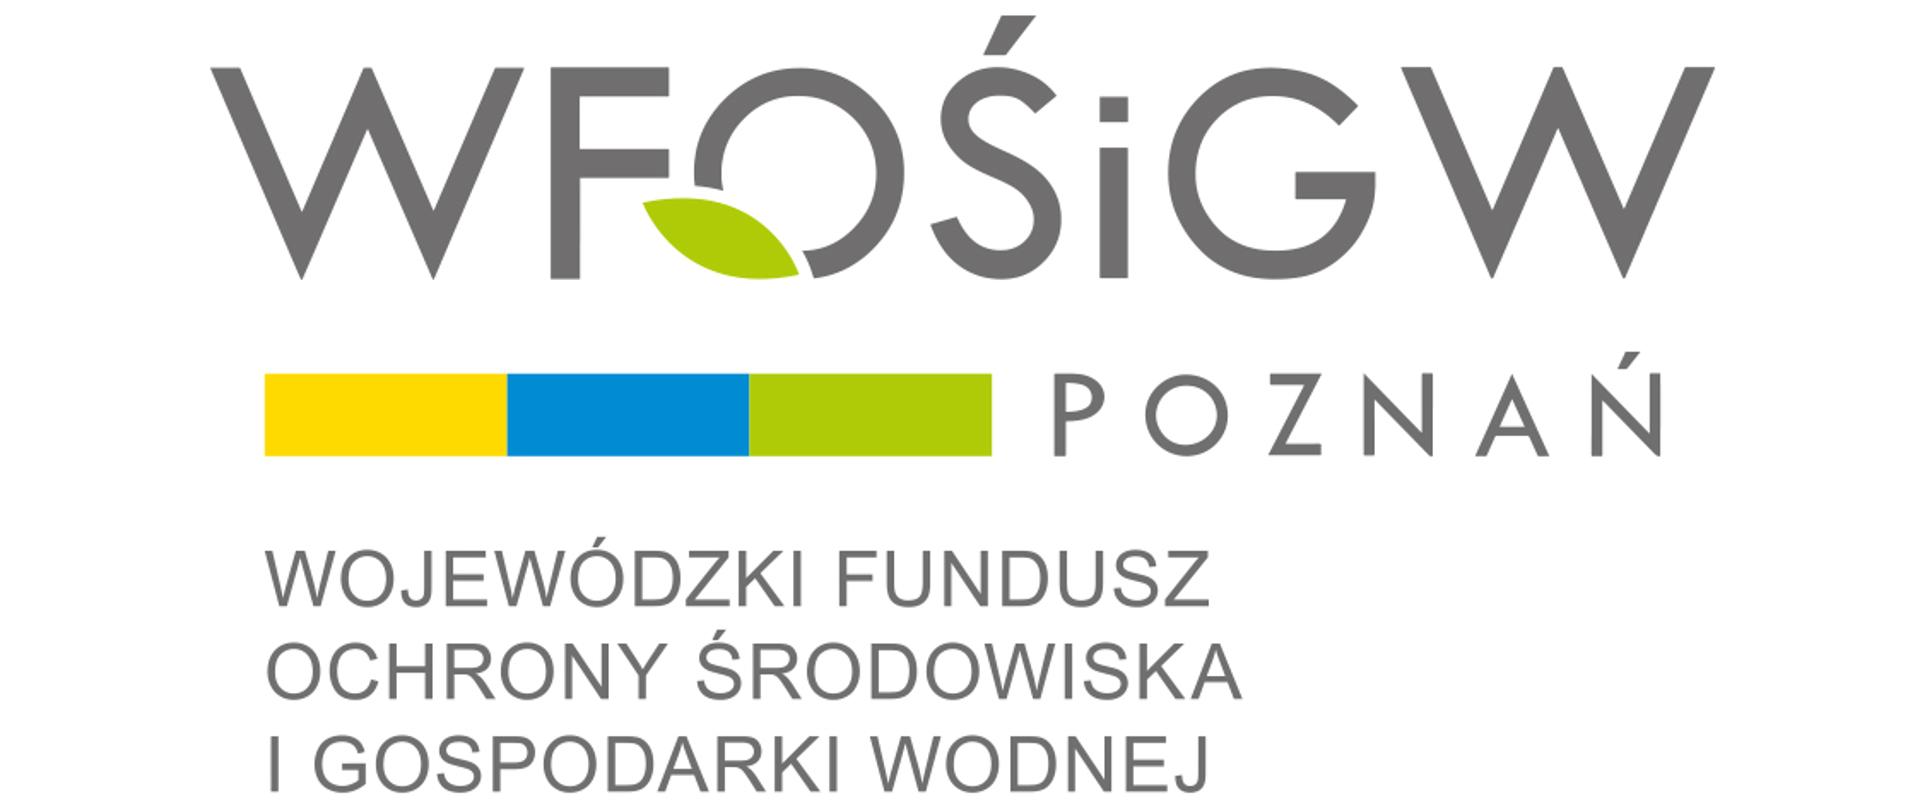 LOGO - Wojewódzki Fundusz Ochrony Środowiska i Gospodarki Wodnej w Poznaniu